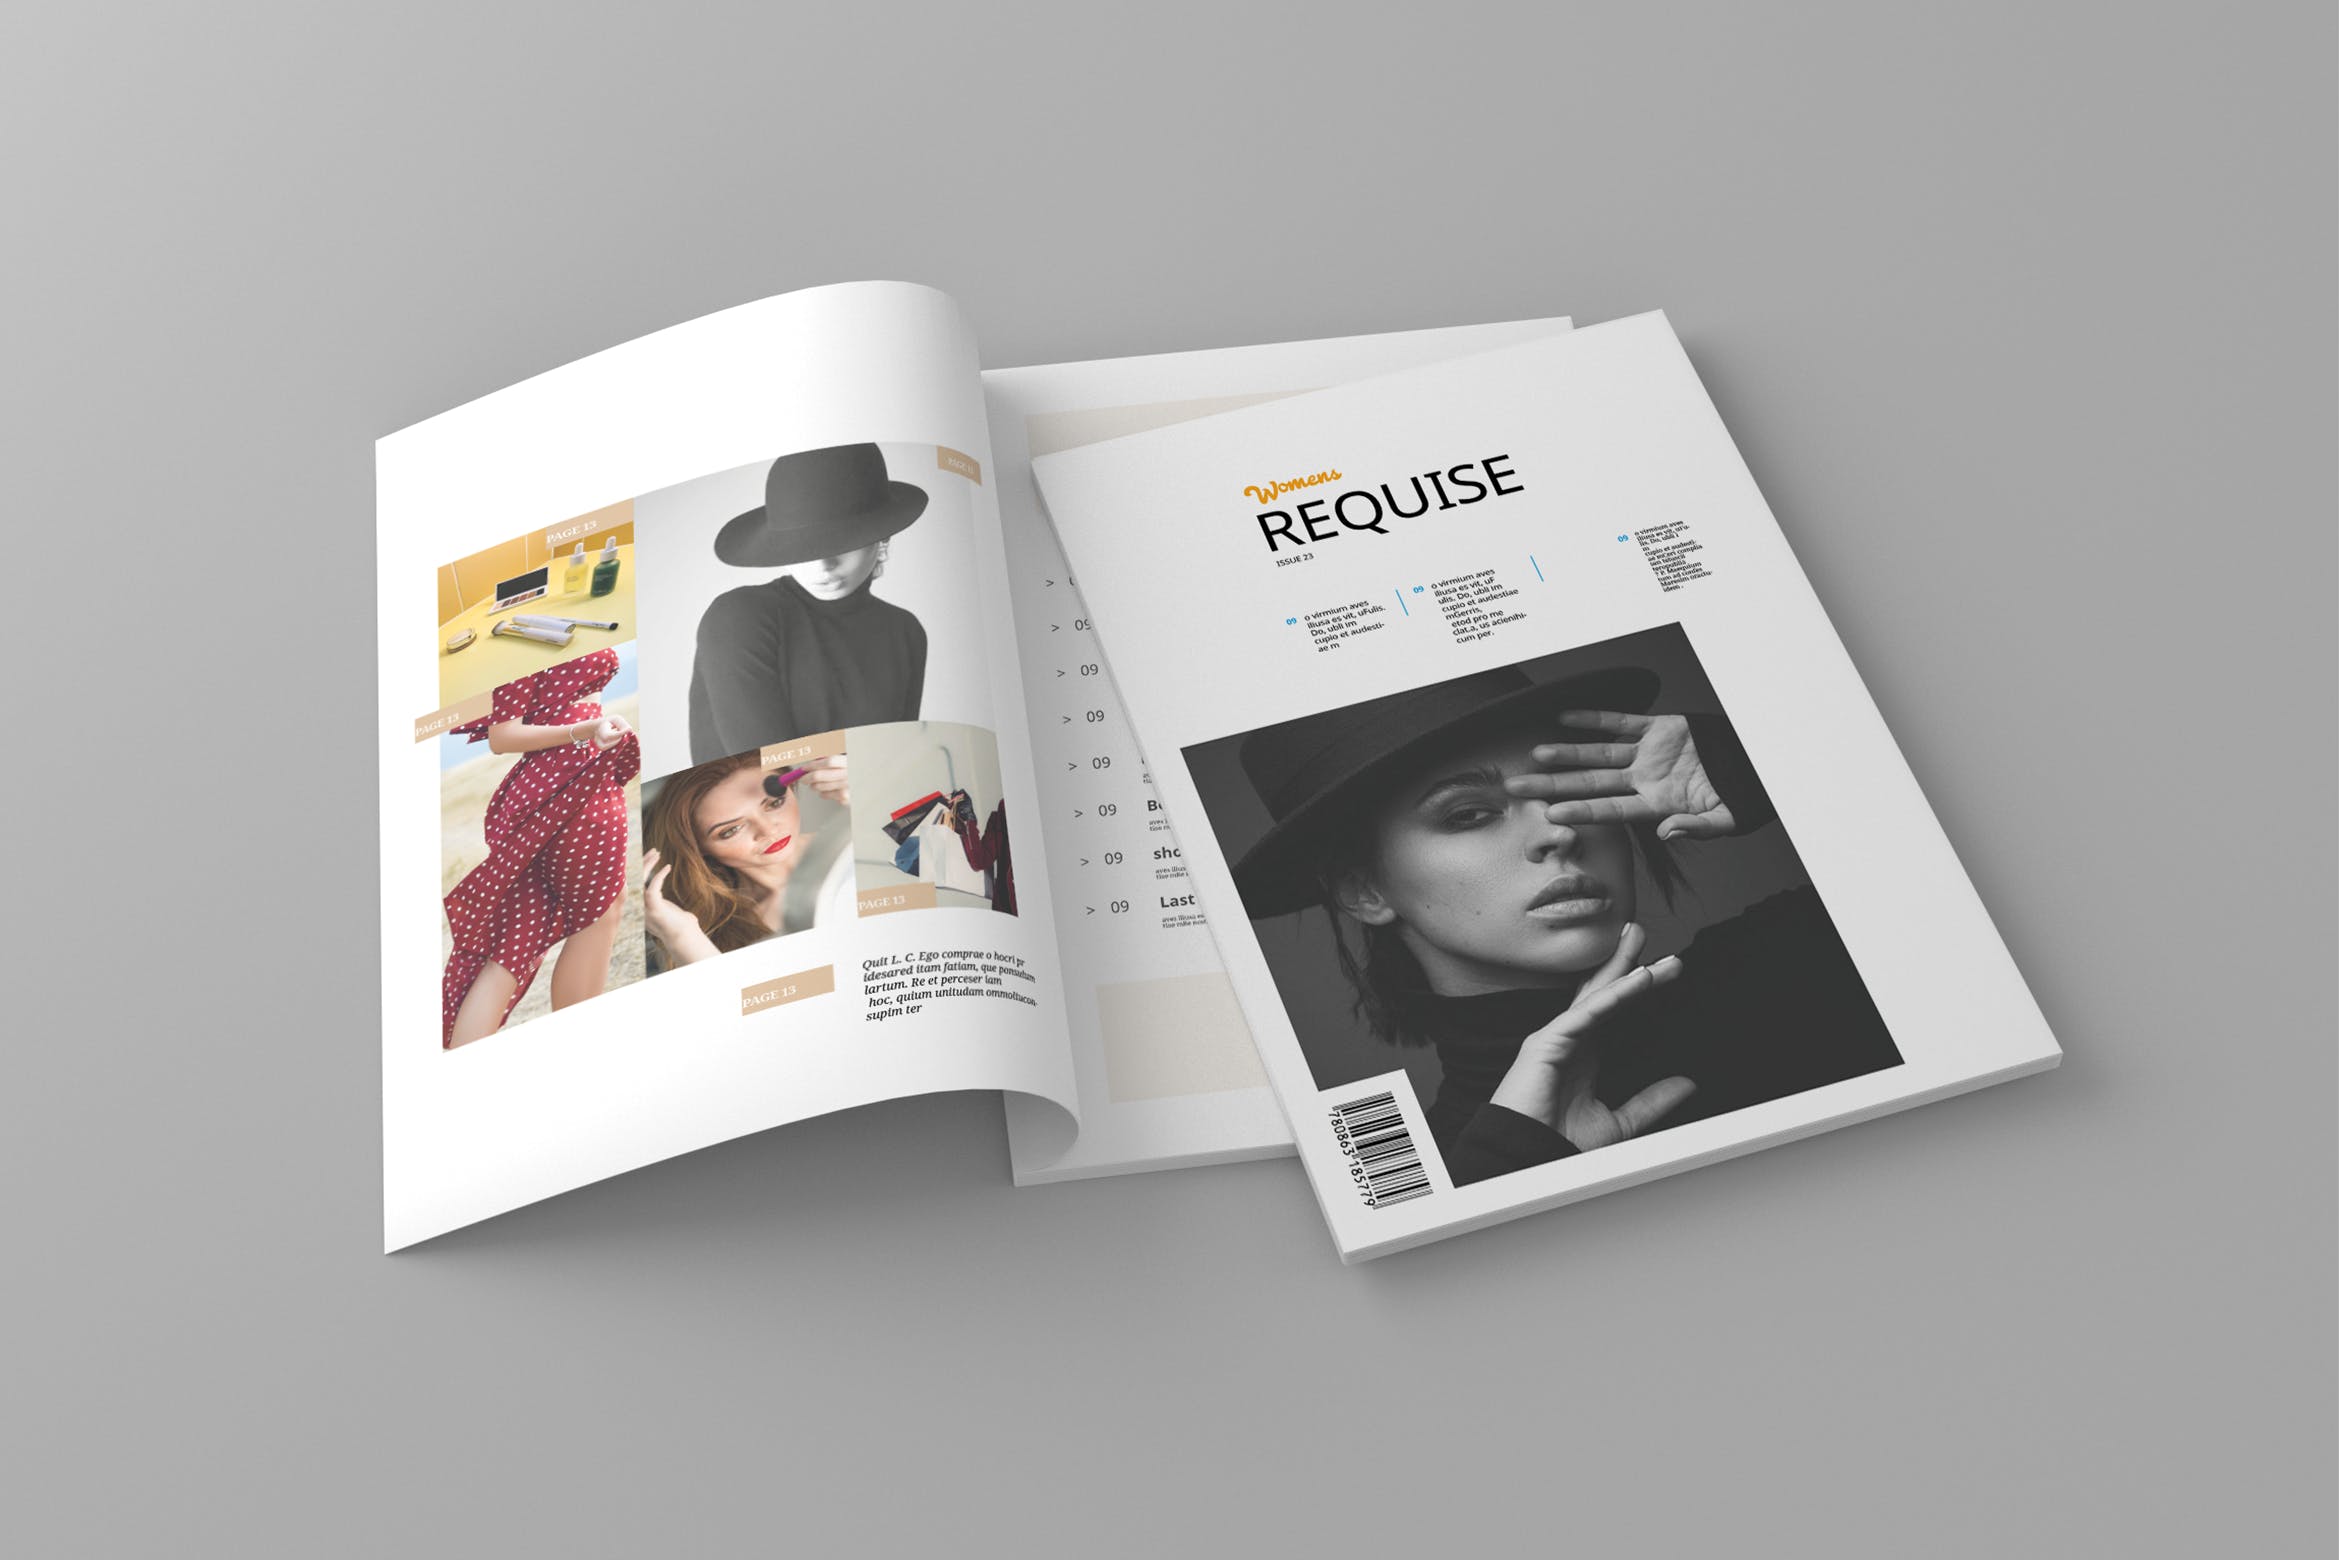 女性时尚主题蚂蚁素材精选杂志排版设计模板 Requise – Magazine Template插图